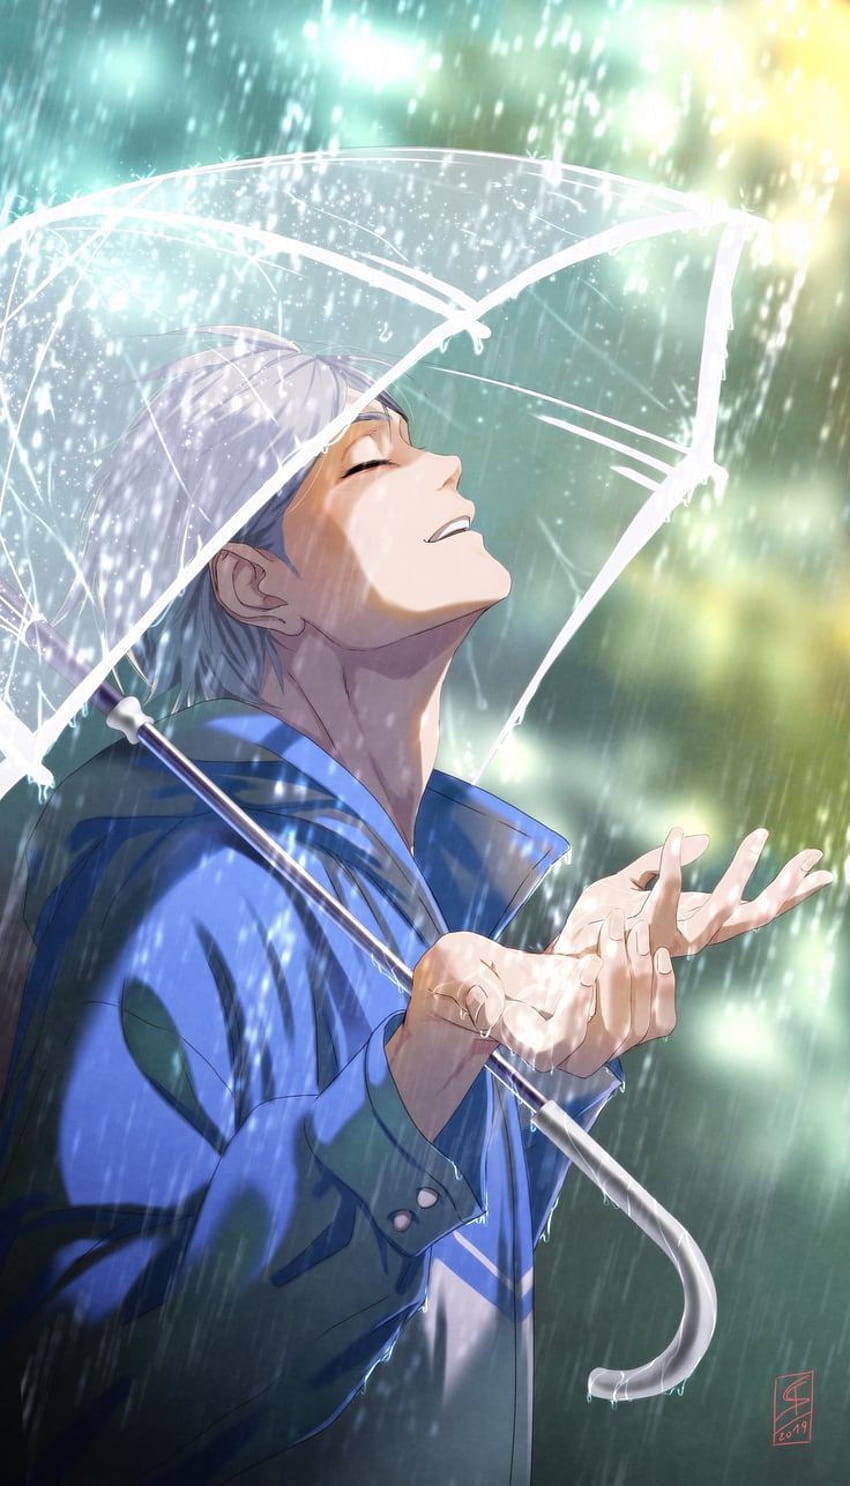 Lolur Anirudh on, cute anime boy rain HD phone wallpaper